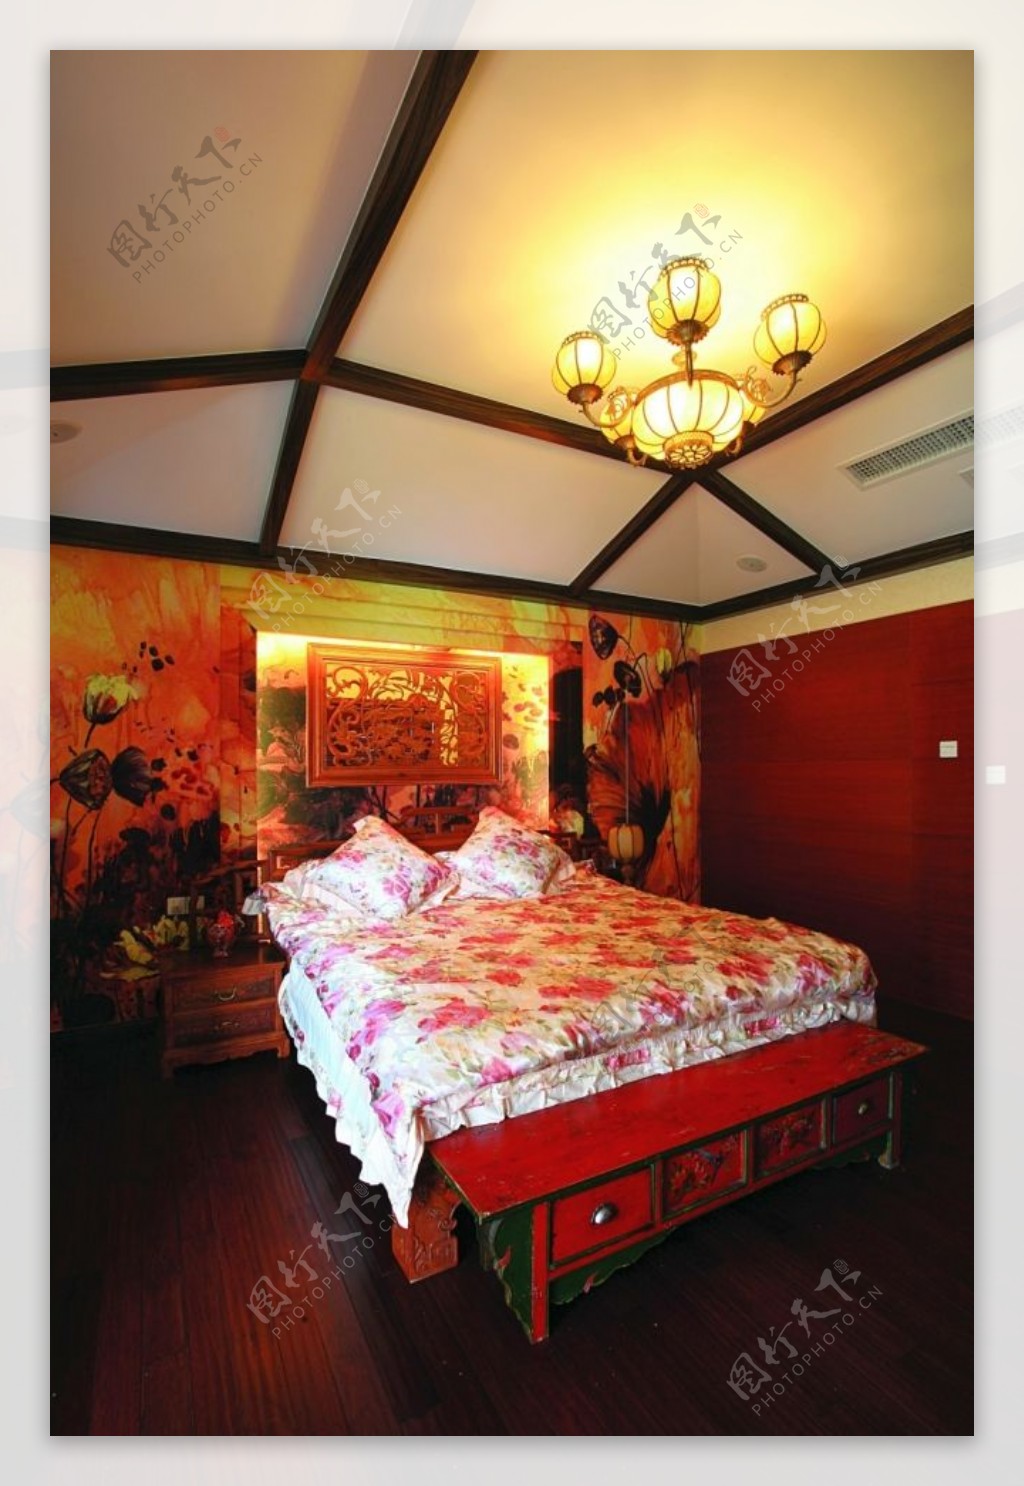 传统中国风格卧室别墅效果图设计